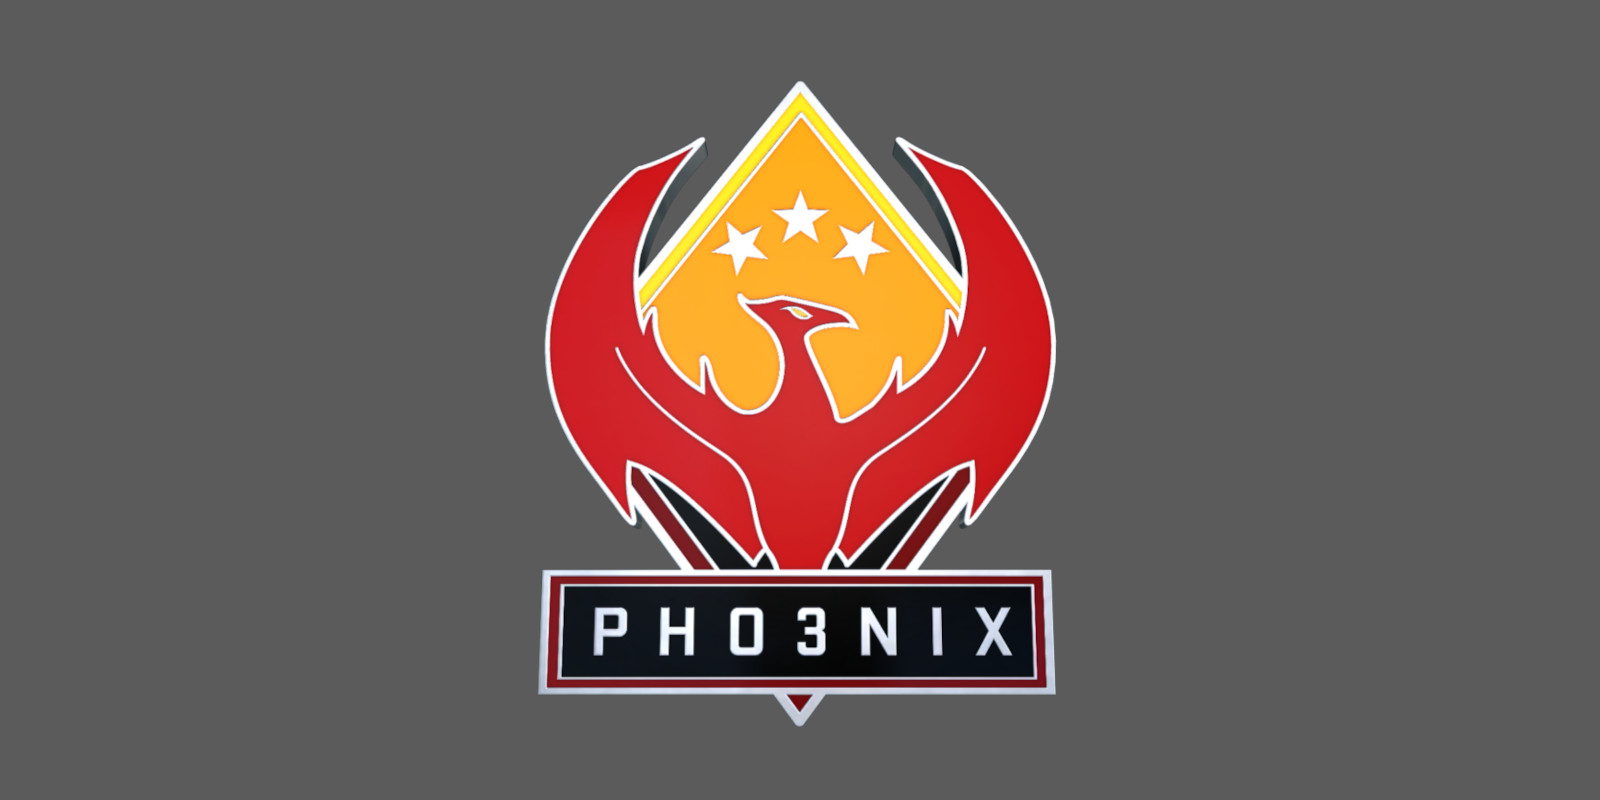 CS:GO - Series 2 - Phoenix Collectible Pin